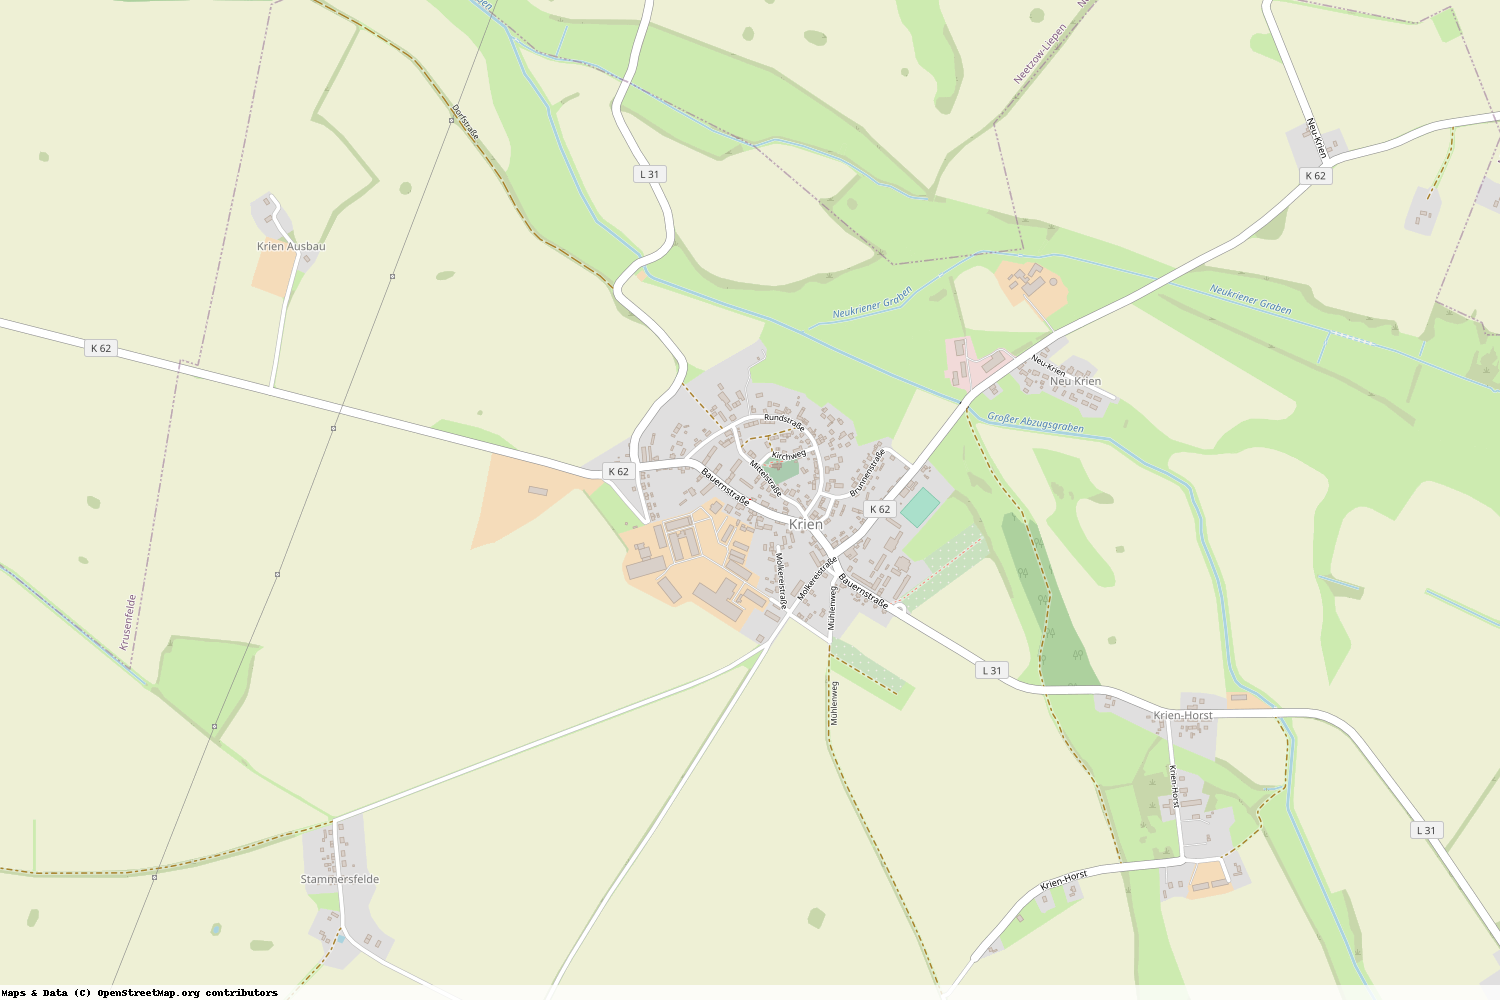 Ist gerade Stromausfall in Mecklenburg-Vorpommern - Vorpommern-Greifswald - Krien?